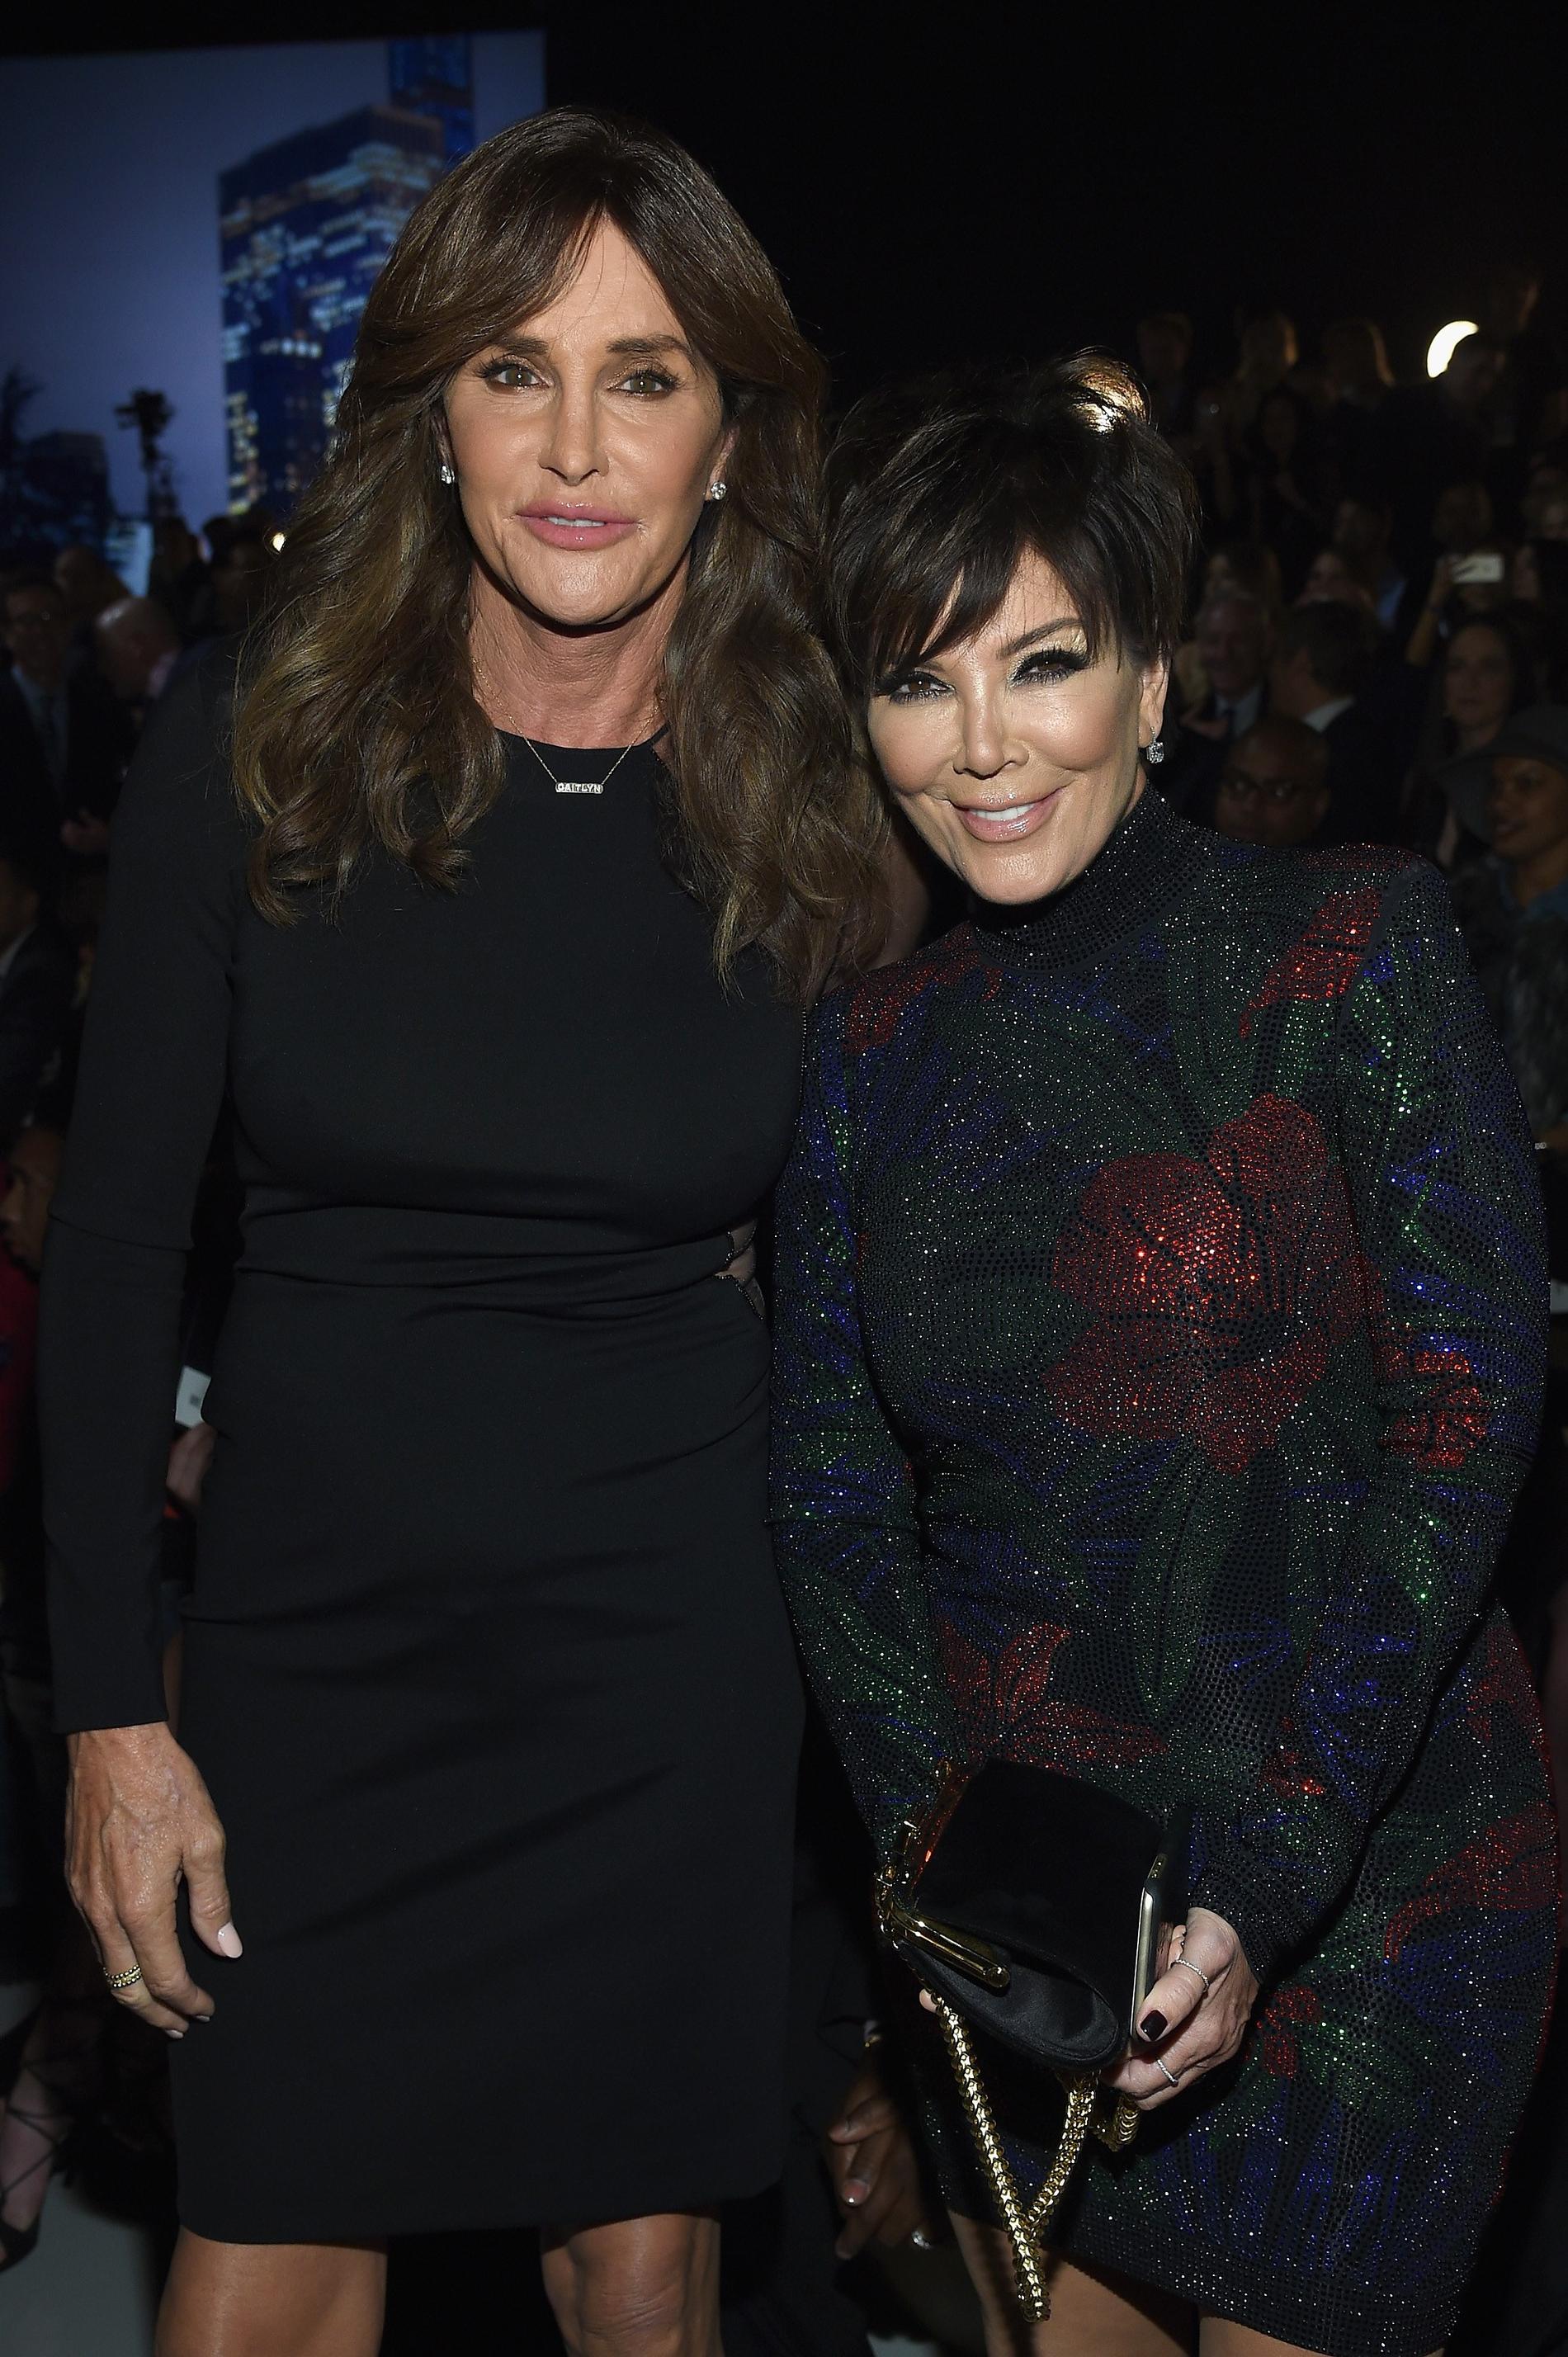 Non più contatto: Caitlyn Jenner ha recentemente affermato che lei e l'ex moglie Kris Jenner non hanno più una relazione tra loro, e che Jenner si riferisce principalmente alle figlie biologiche Kendall e Kylie che hanno insieme i due.